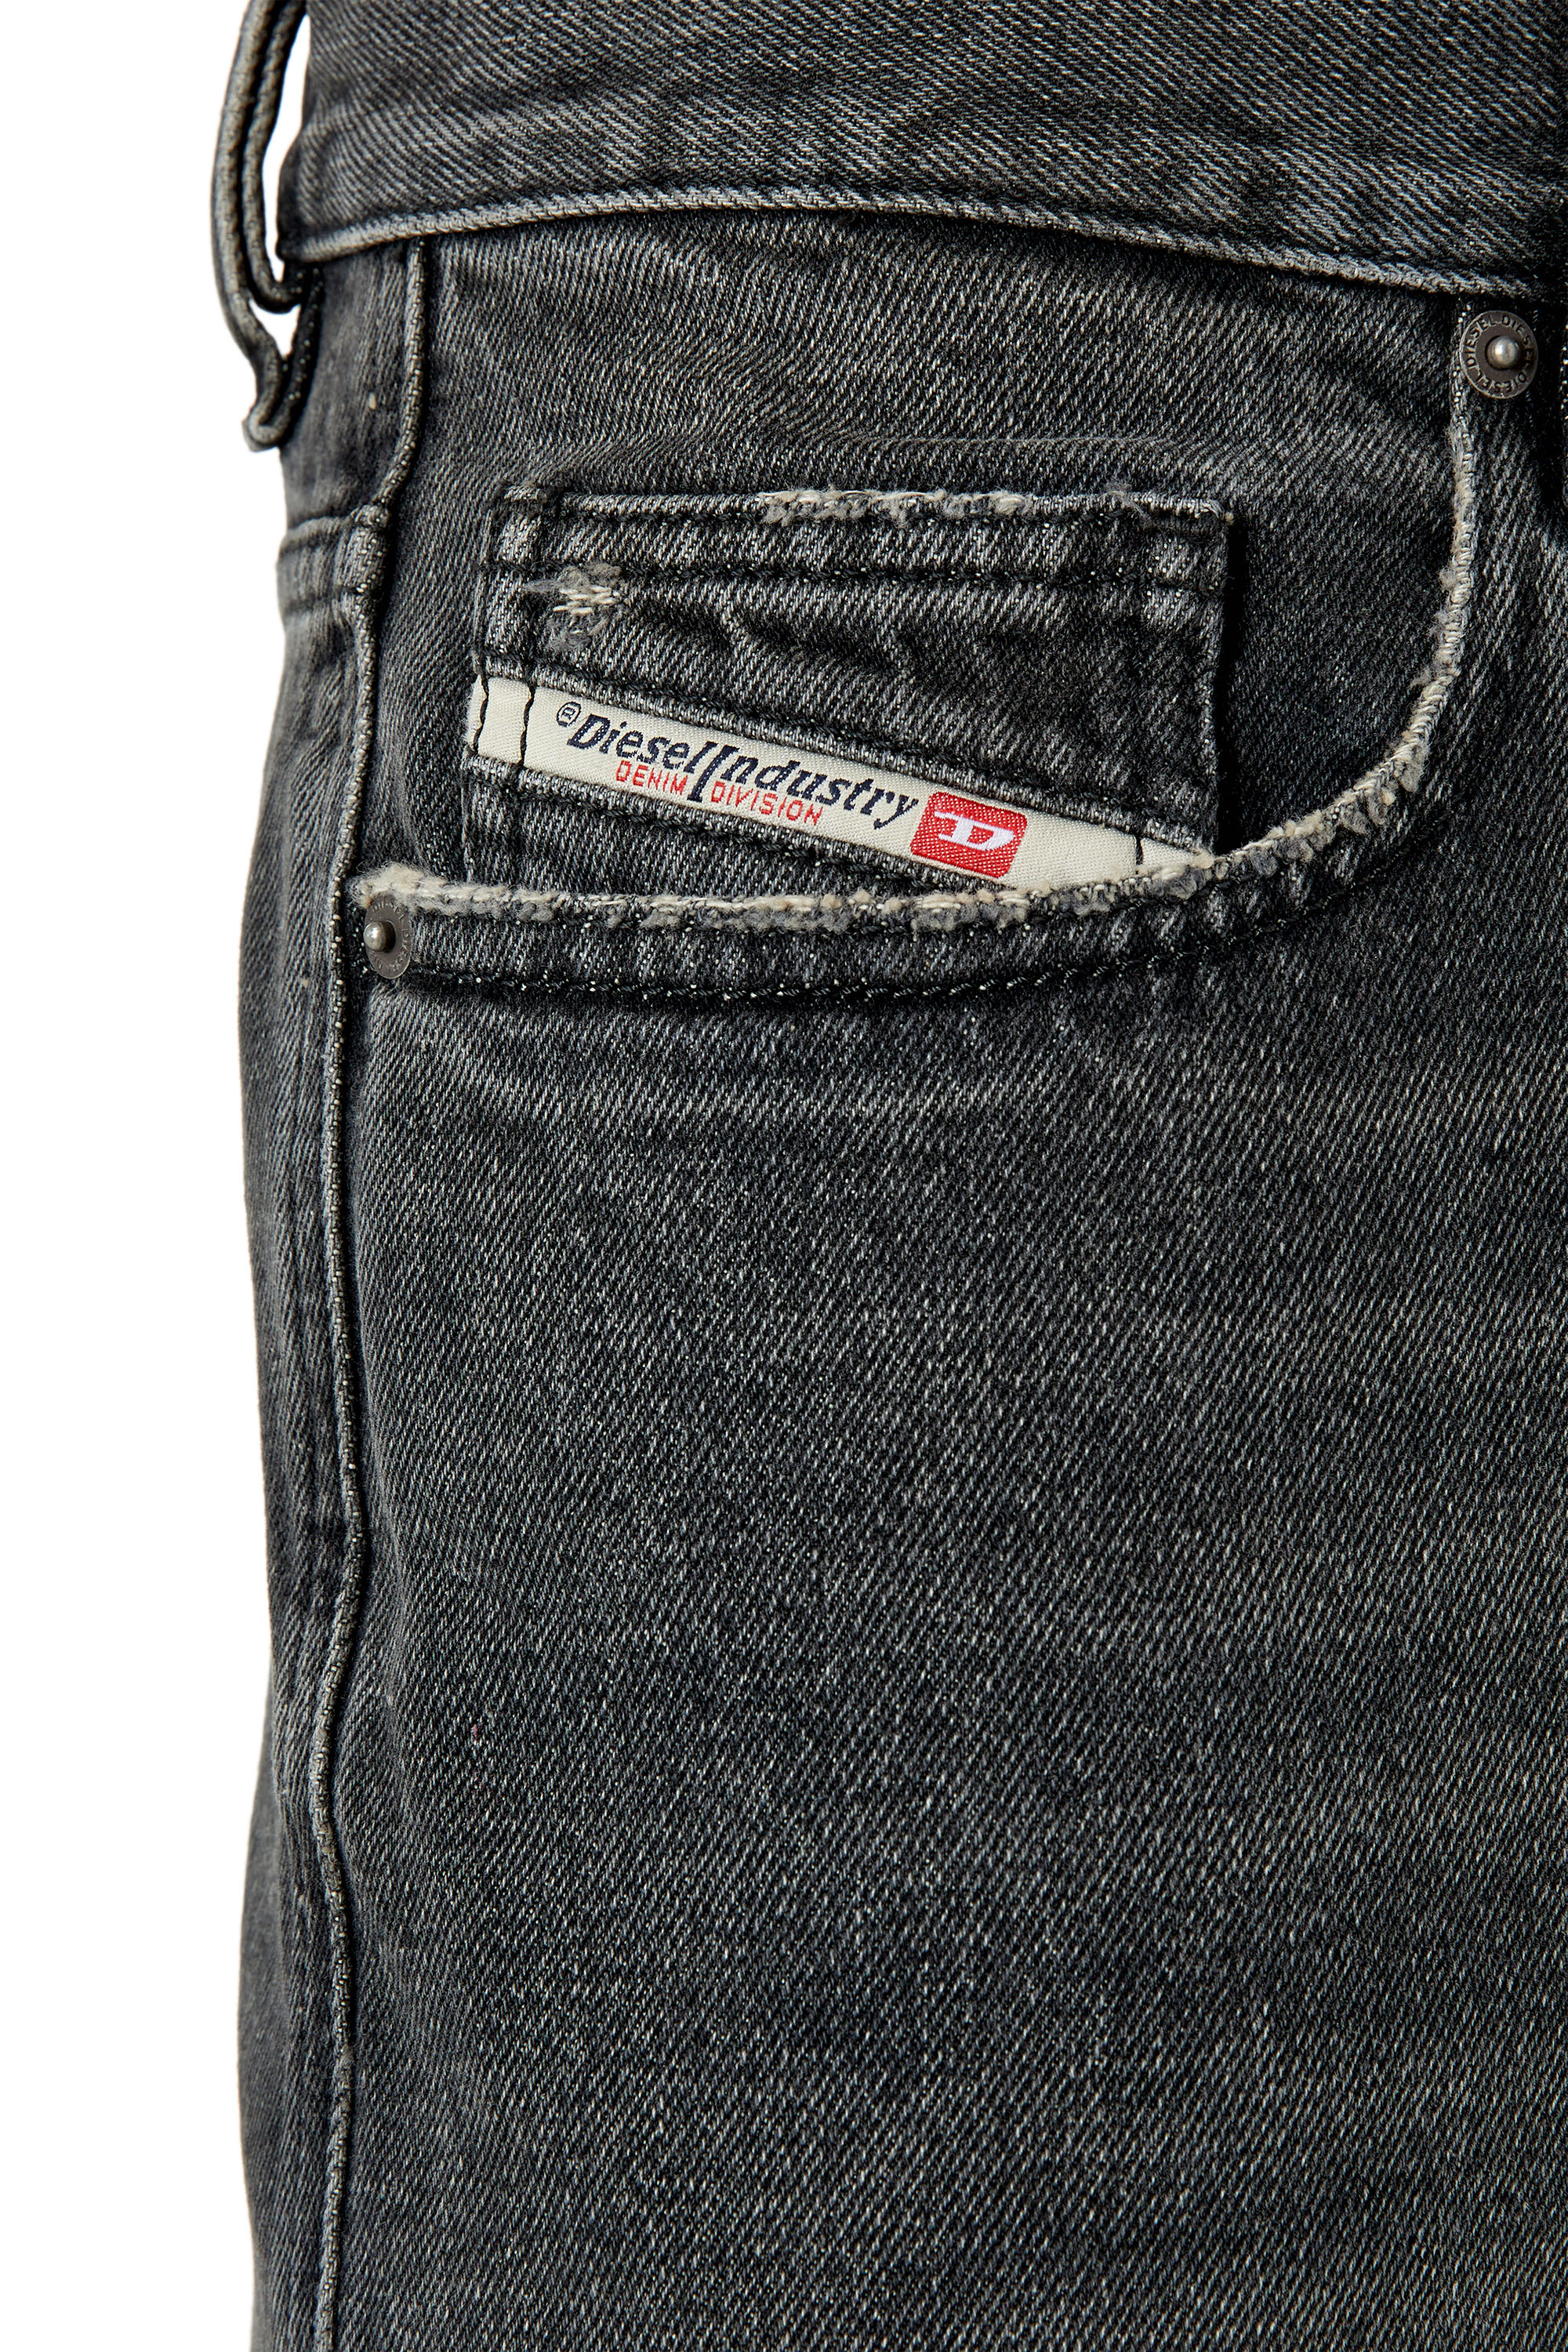 Diesel - Straight Jeans 2020 D-Viker 007K8,  - Image 4